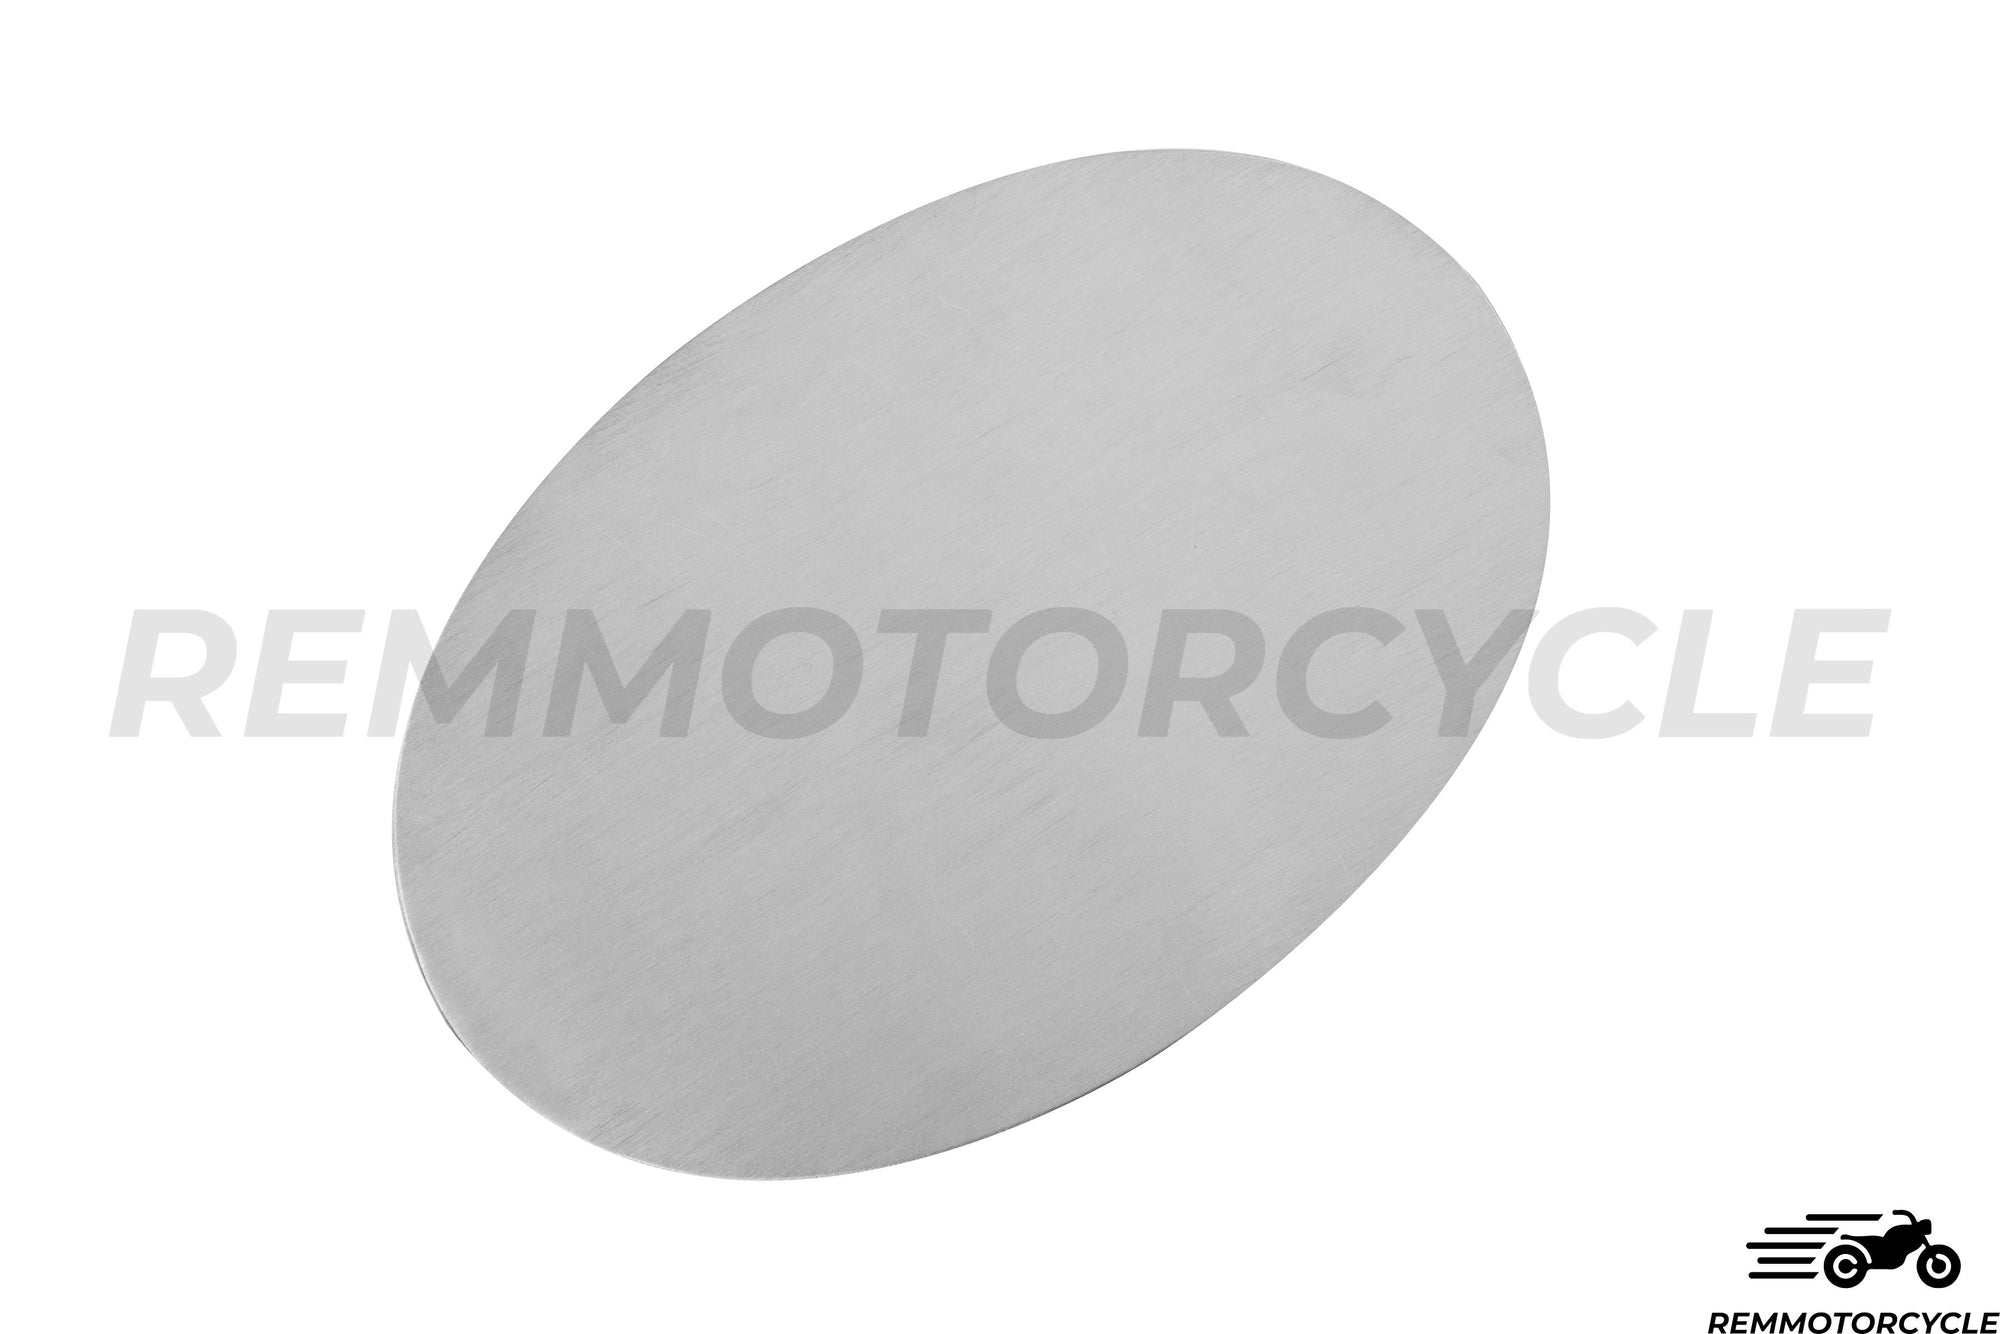 Placa lateral oval de alumínio